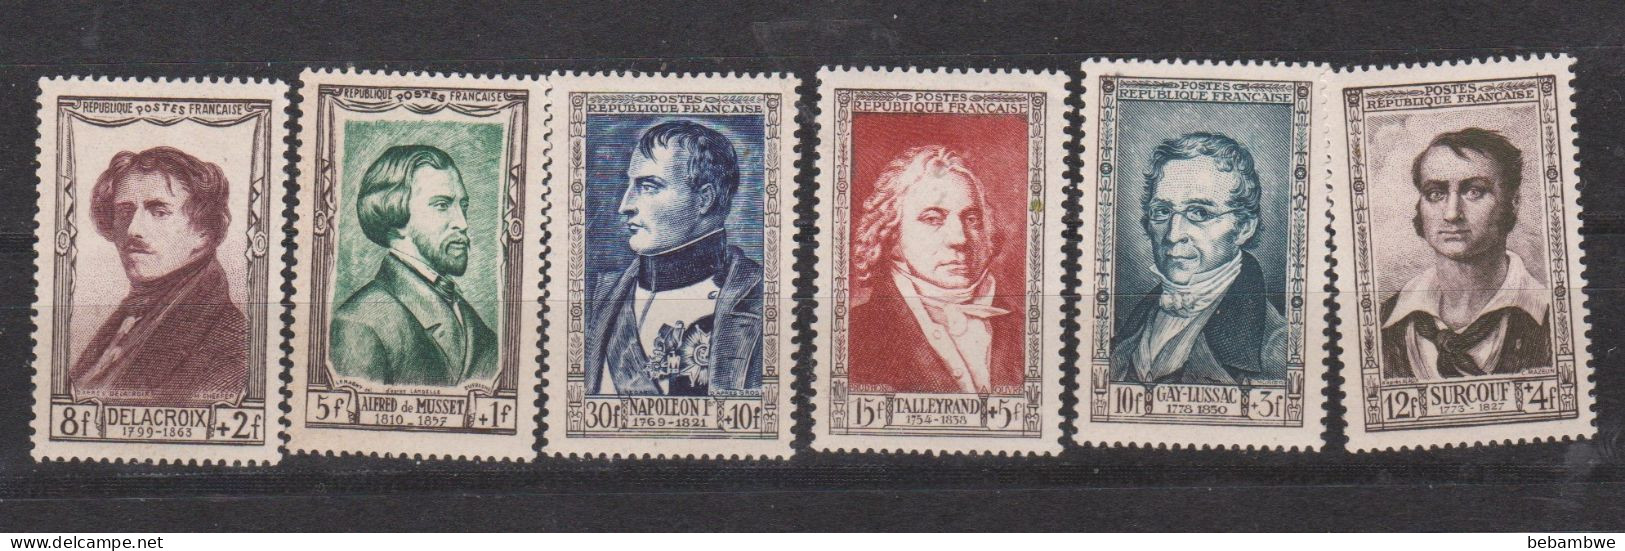 Célebrités19em  Napoléon Talleyrand Surcouf  Lussac Delacroix Musset - Unused Stamps